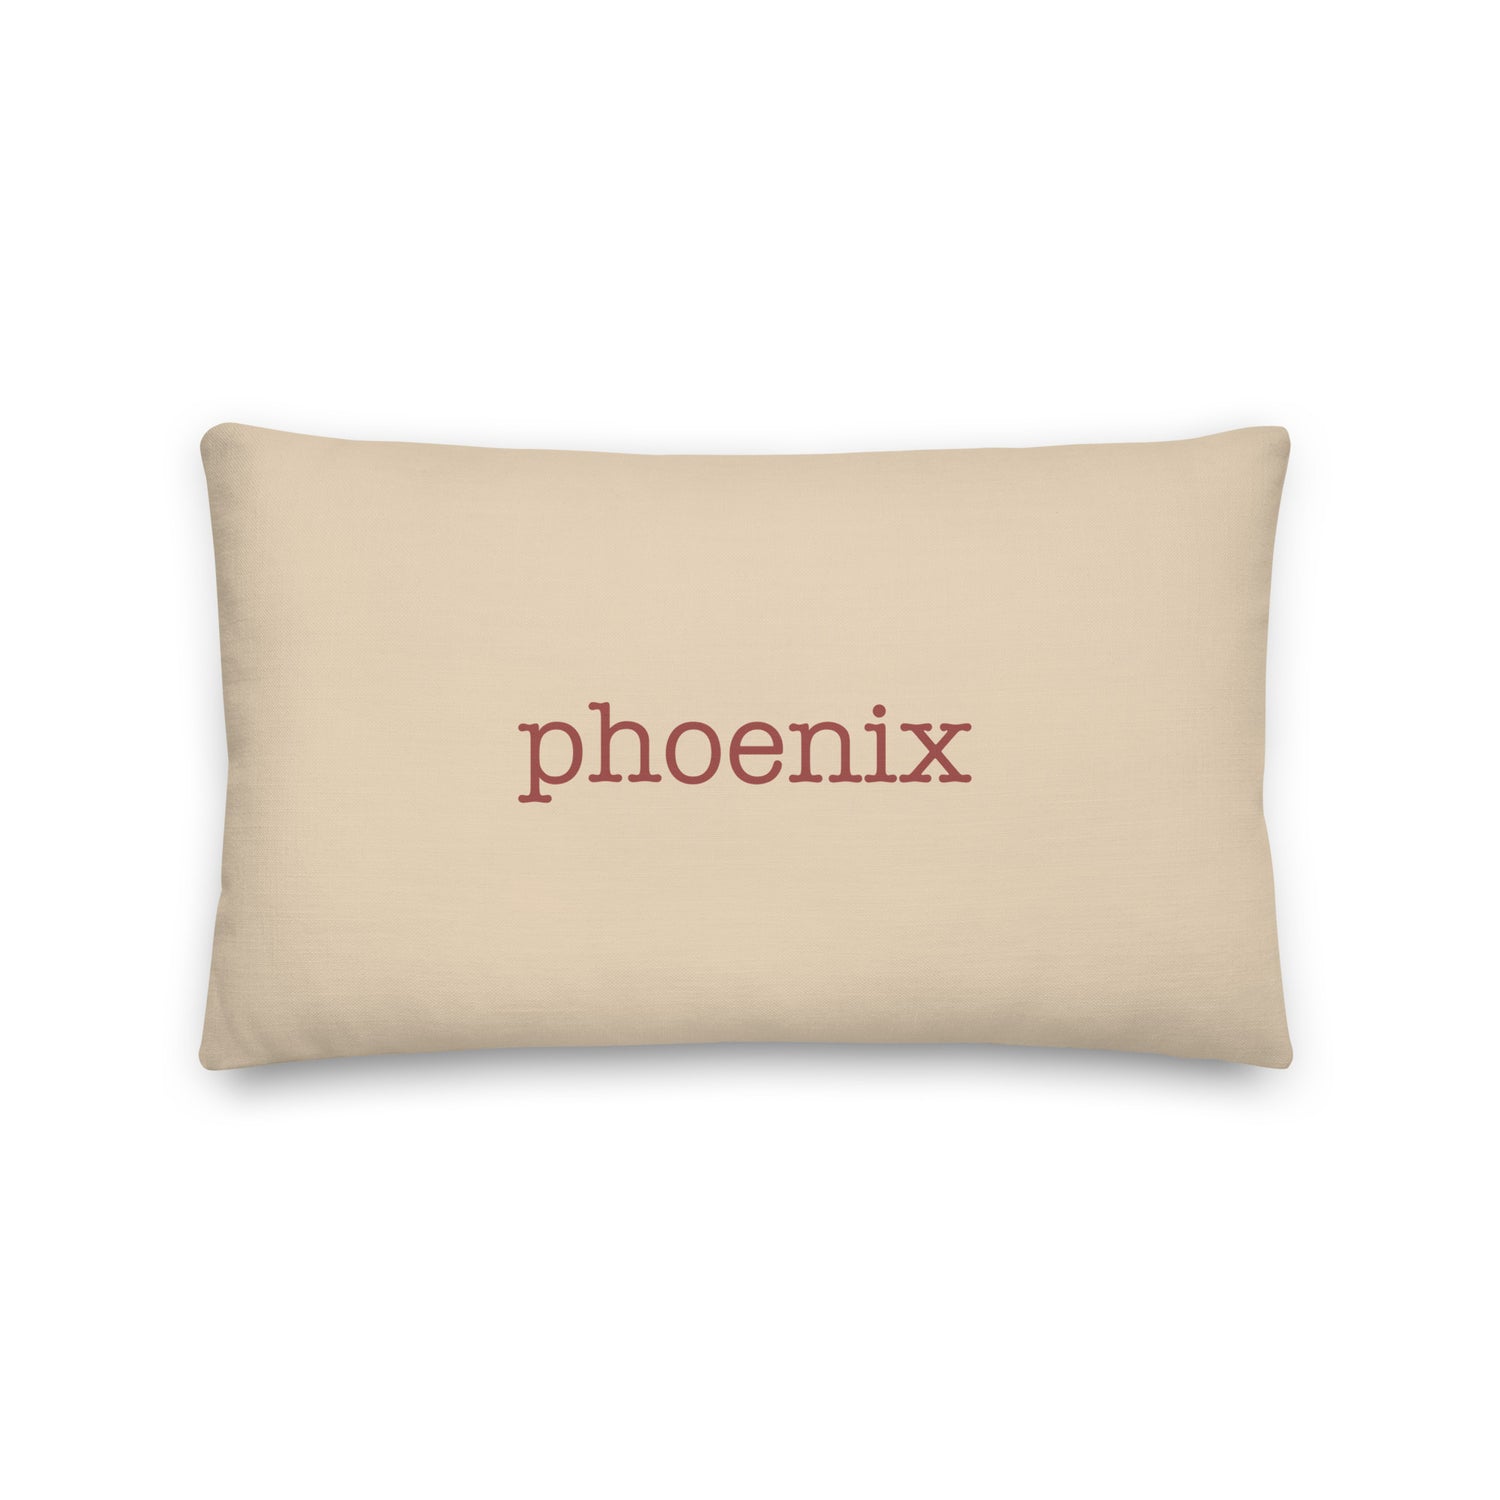 Phoenix Arizona Pillows and Blankets • PHX Airport Code